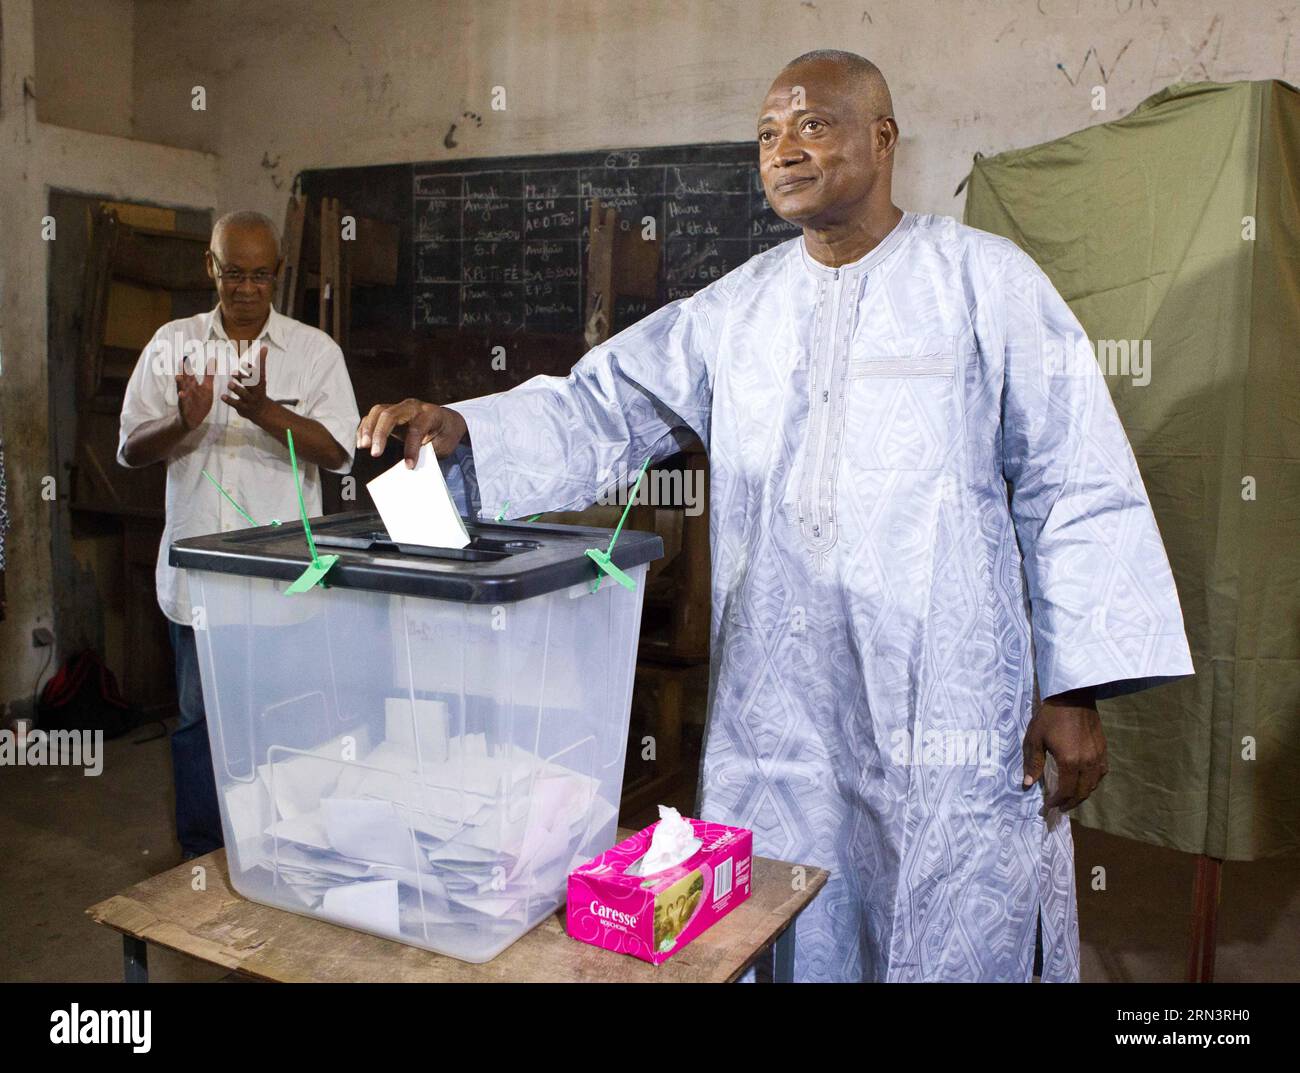 (150425) -- LOME, 25 avril 2015 -- le chef de l'opposition togolaise et candidat de l'Alliance pour le changement national (ANC), Jean-Pierre Fabre, vote dans un bureau de vote de Lomé, Togo, le 25 avril 2015. Les électeurs du Togo ont commencé à voter samedi pour choisir un nouveau président dans la paix et la sérénité. Quelque 3,5 millions d'électeurs éligibles de la nation ouest-africaine décideront entre le président sortant Faure Gnassingbe et quatre challengers dans 8 994 bureaux de vote à l'échelle nationale, qui ont été ouverts à l'heure locale 7:00 heures et devraient fermer à 4:00 heures) (djj) TOGO-LOME-PRESIDENTIAL VOTE LixJing pu Banque D'Images